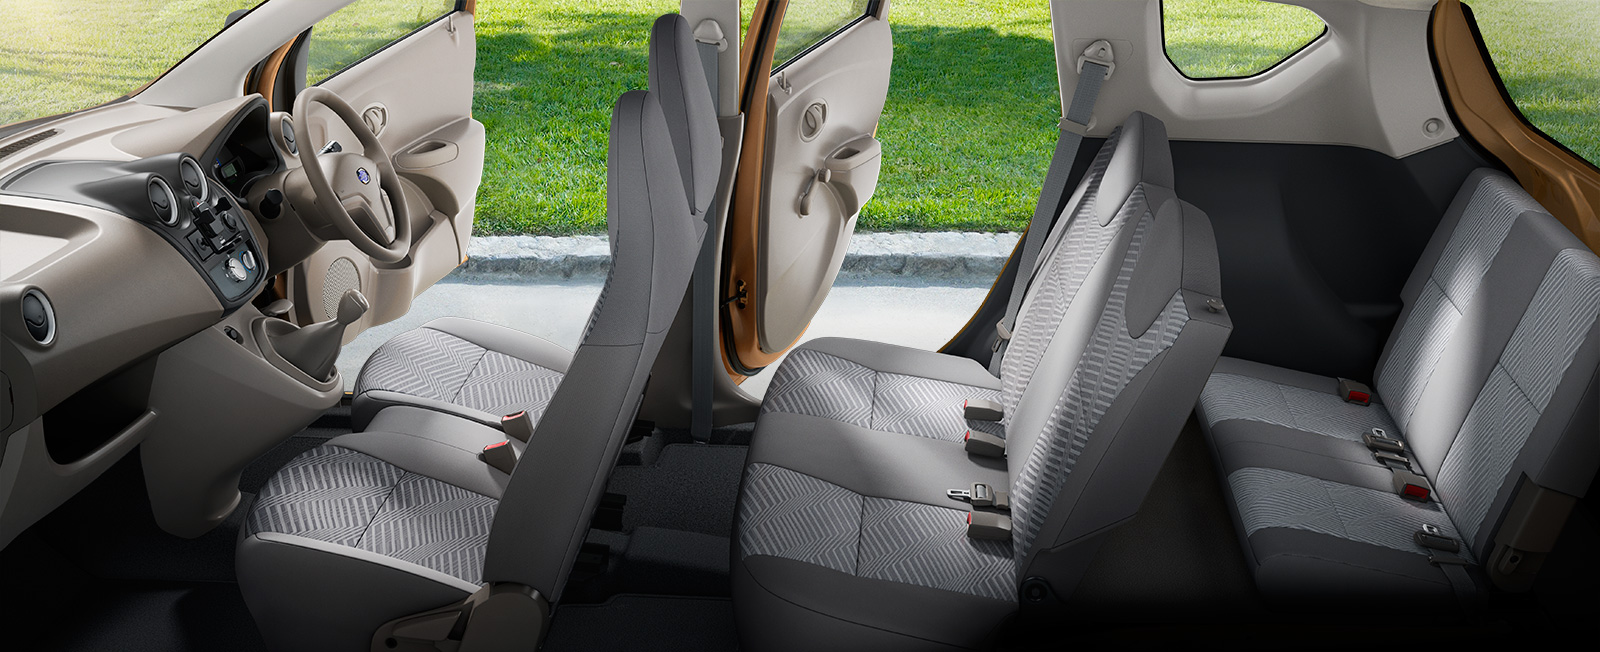 Datsun-Go+mpv-interiors-3-row-seats